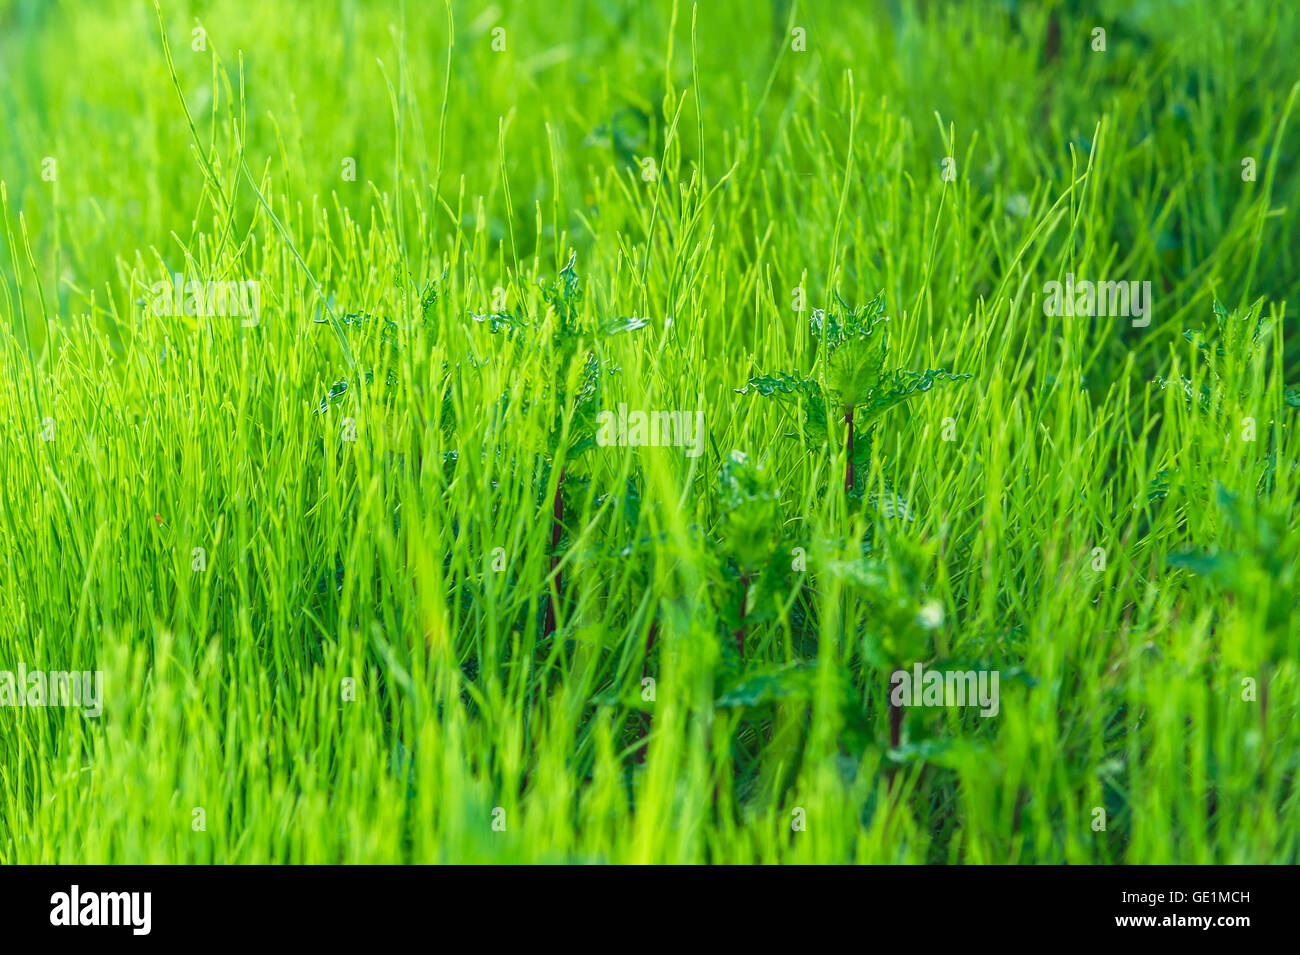 L'herbe verte pelouse et la texture d'arrière-plan Banque D'Images